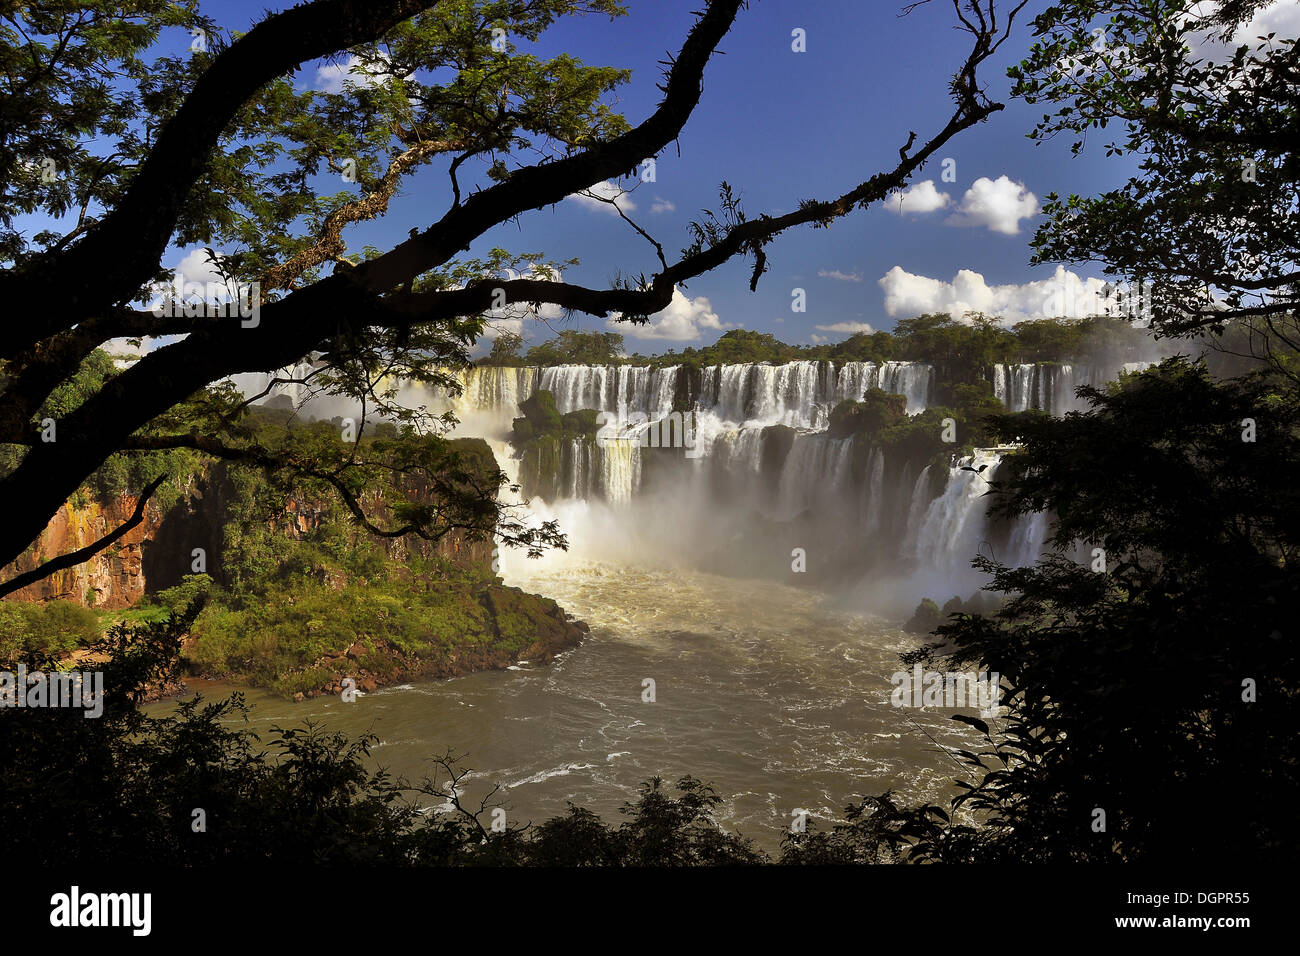 Cataratas del iguazu, Iguazu falls, Puerto Iguazú, in Argentina - Brasile border, SUD AMERICA Foto Stock